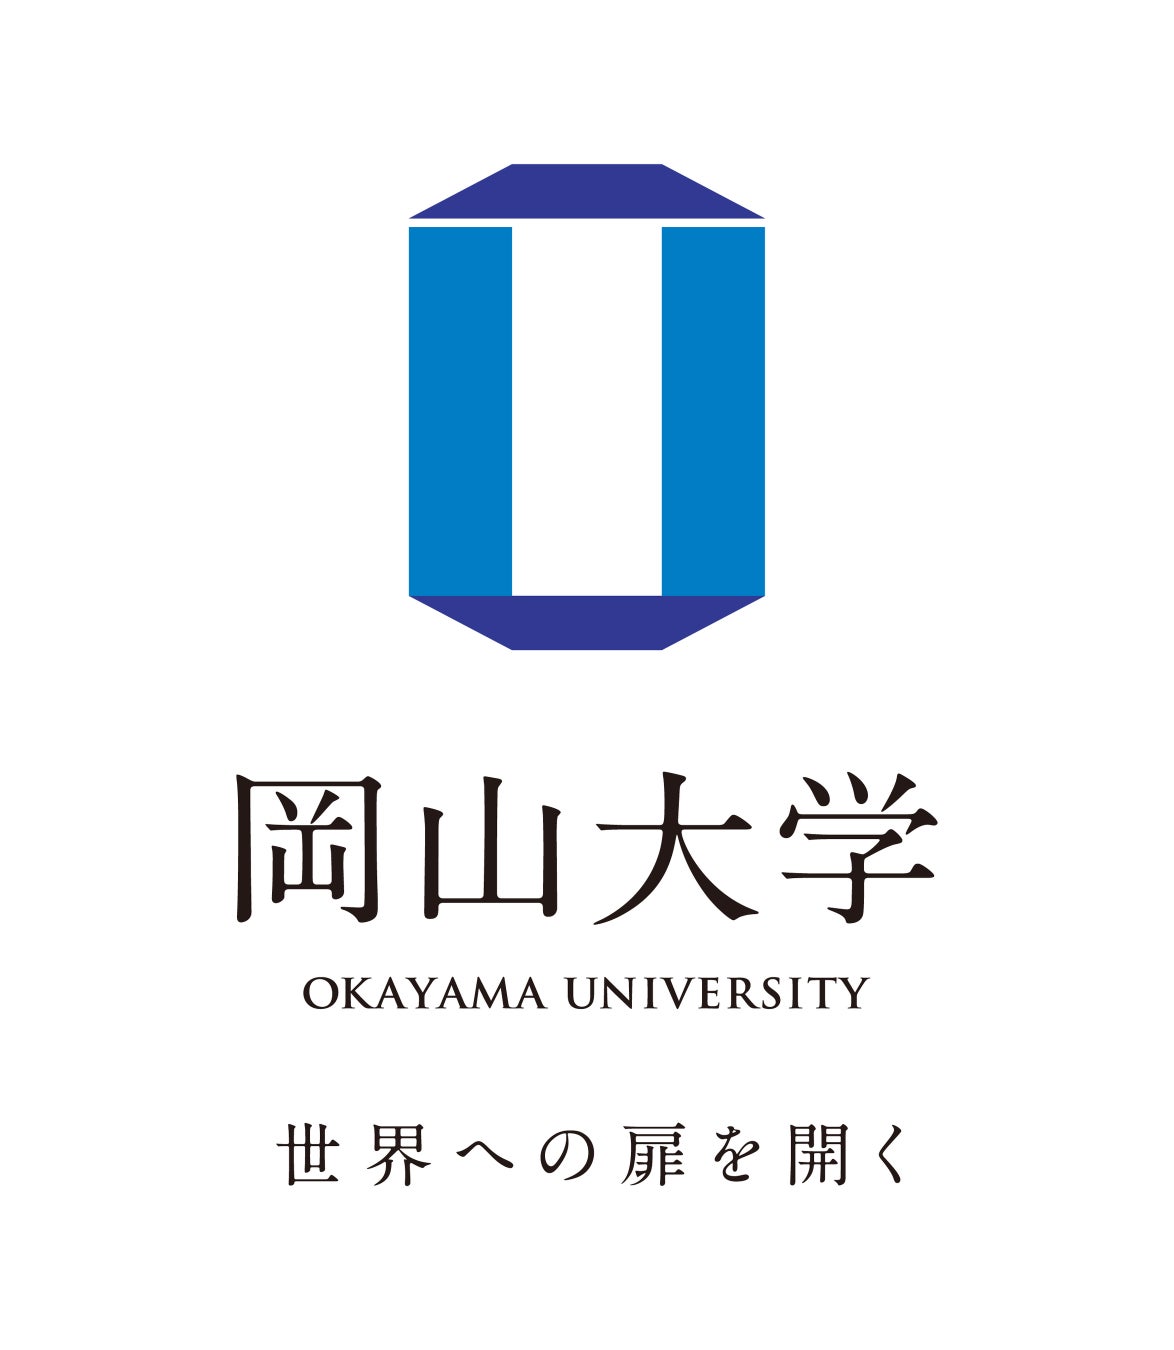 【岡山大学】2024年度岡山大学一般選抜（前期日程）の出願及び志願者状況について